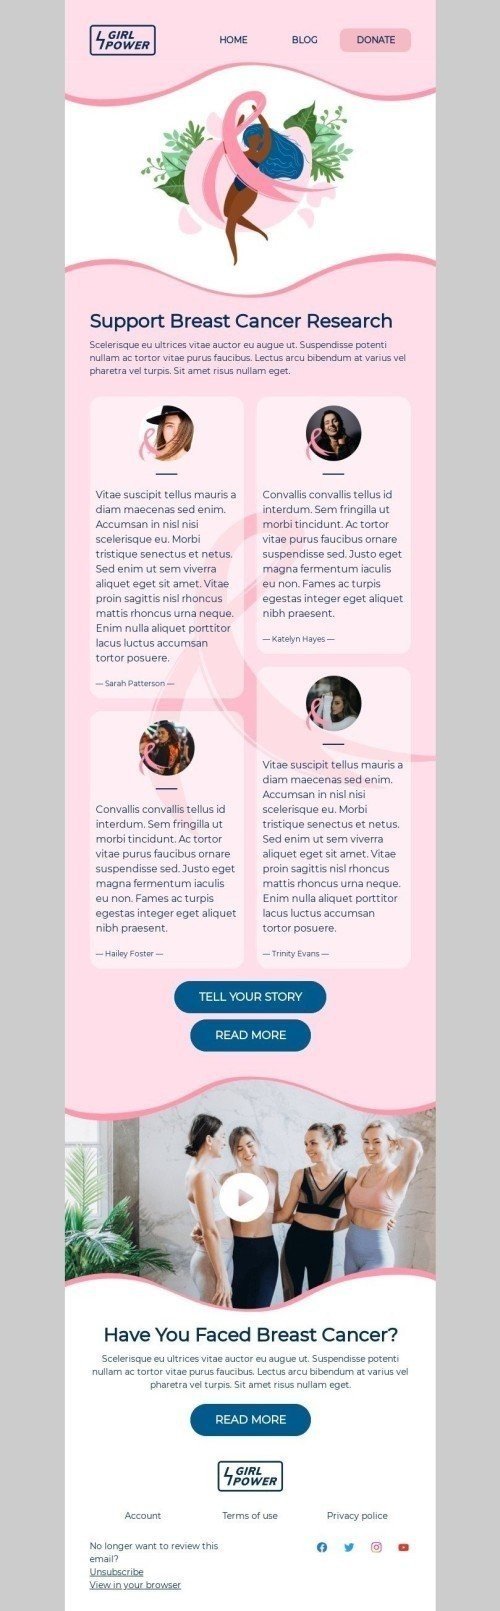 Modello Email Il mese di sensibilizzazione sul cancro al seno «Sostieni la ricerca sul cancro al seno» per il settore industriale di No profit e beneficenza Visualizzazione mobile